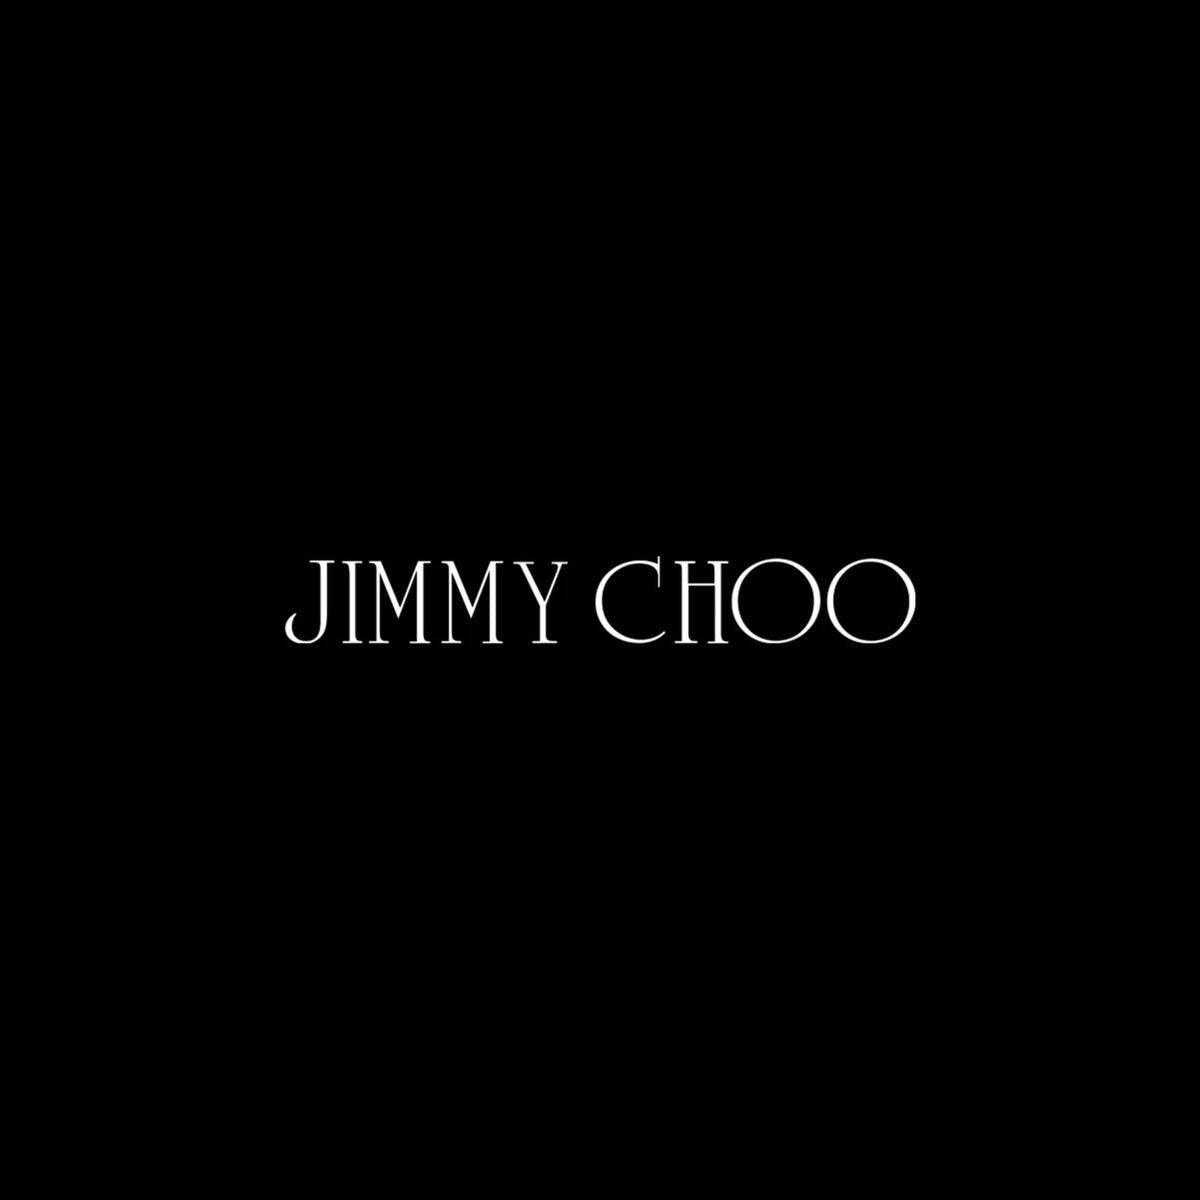 Jimmy Choo (ג'ימי צ'ו)